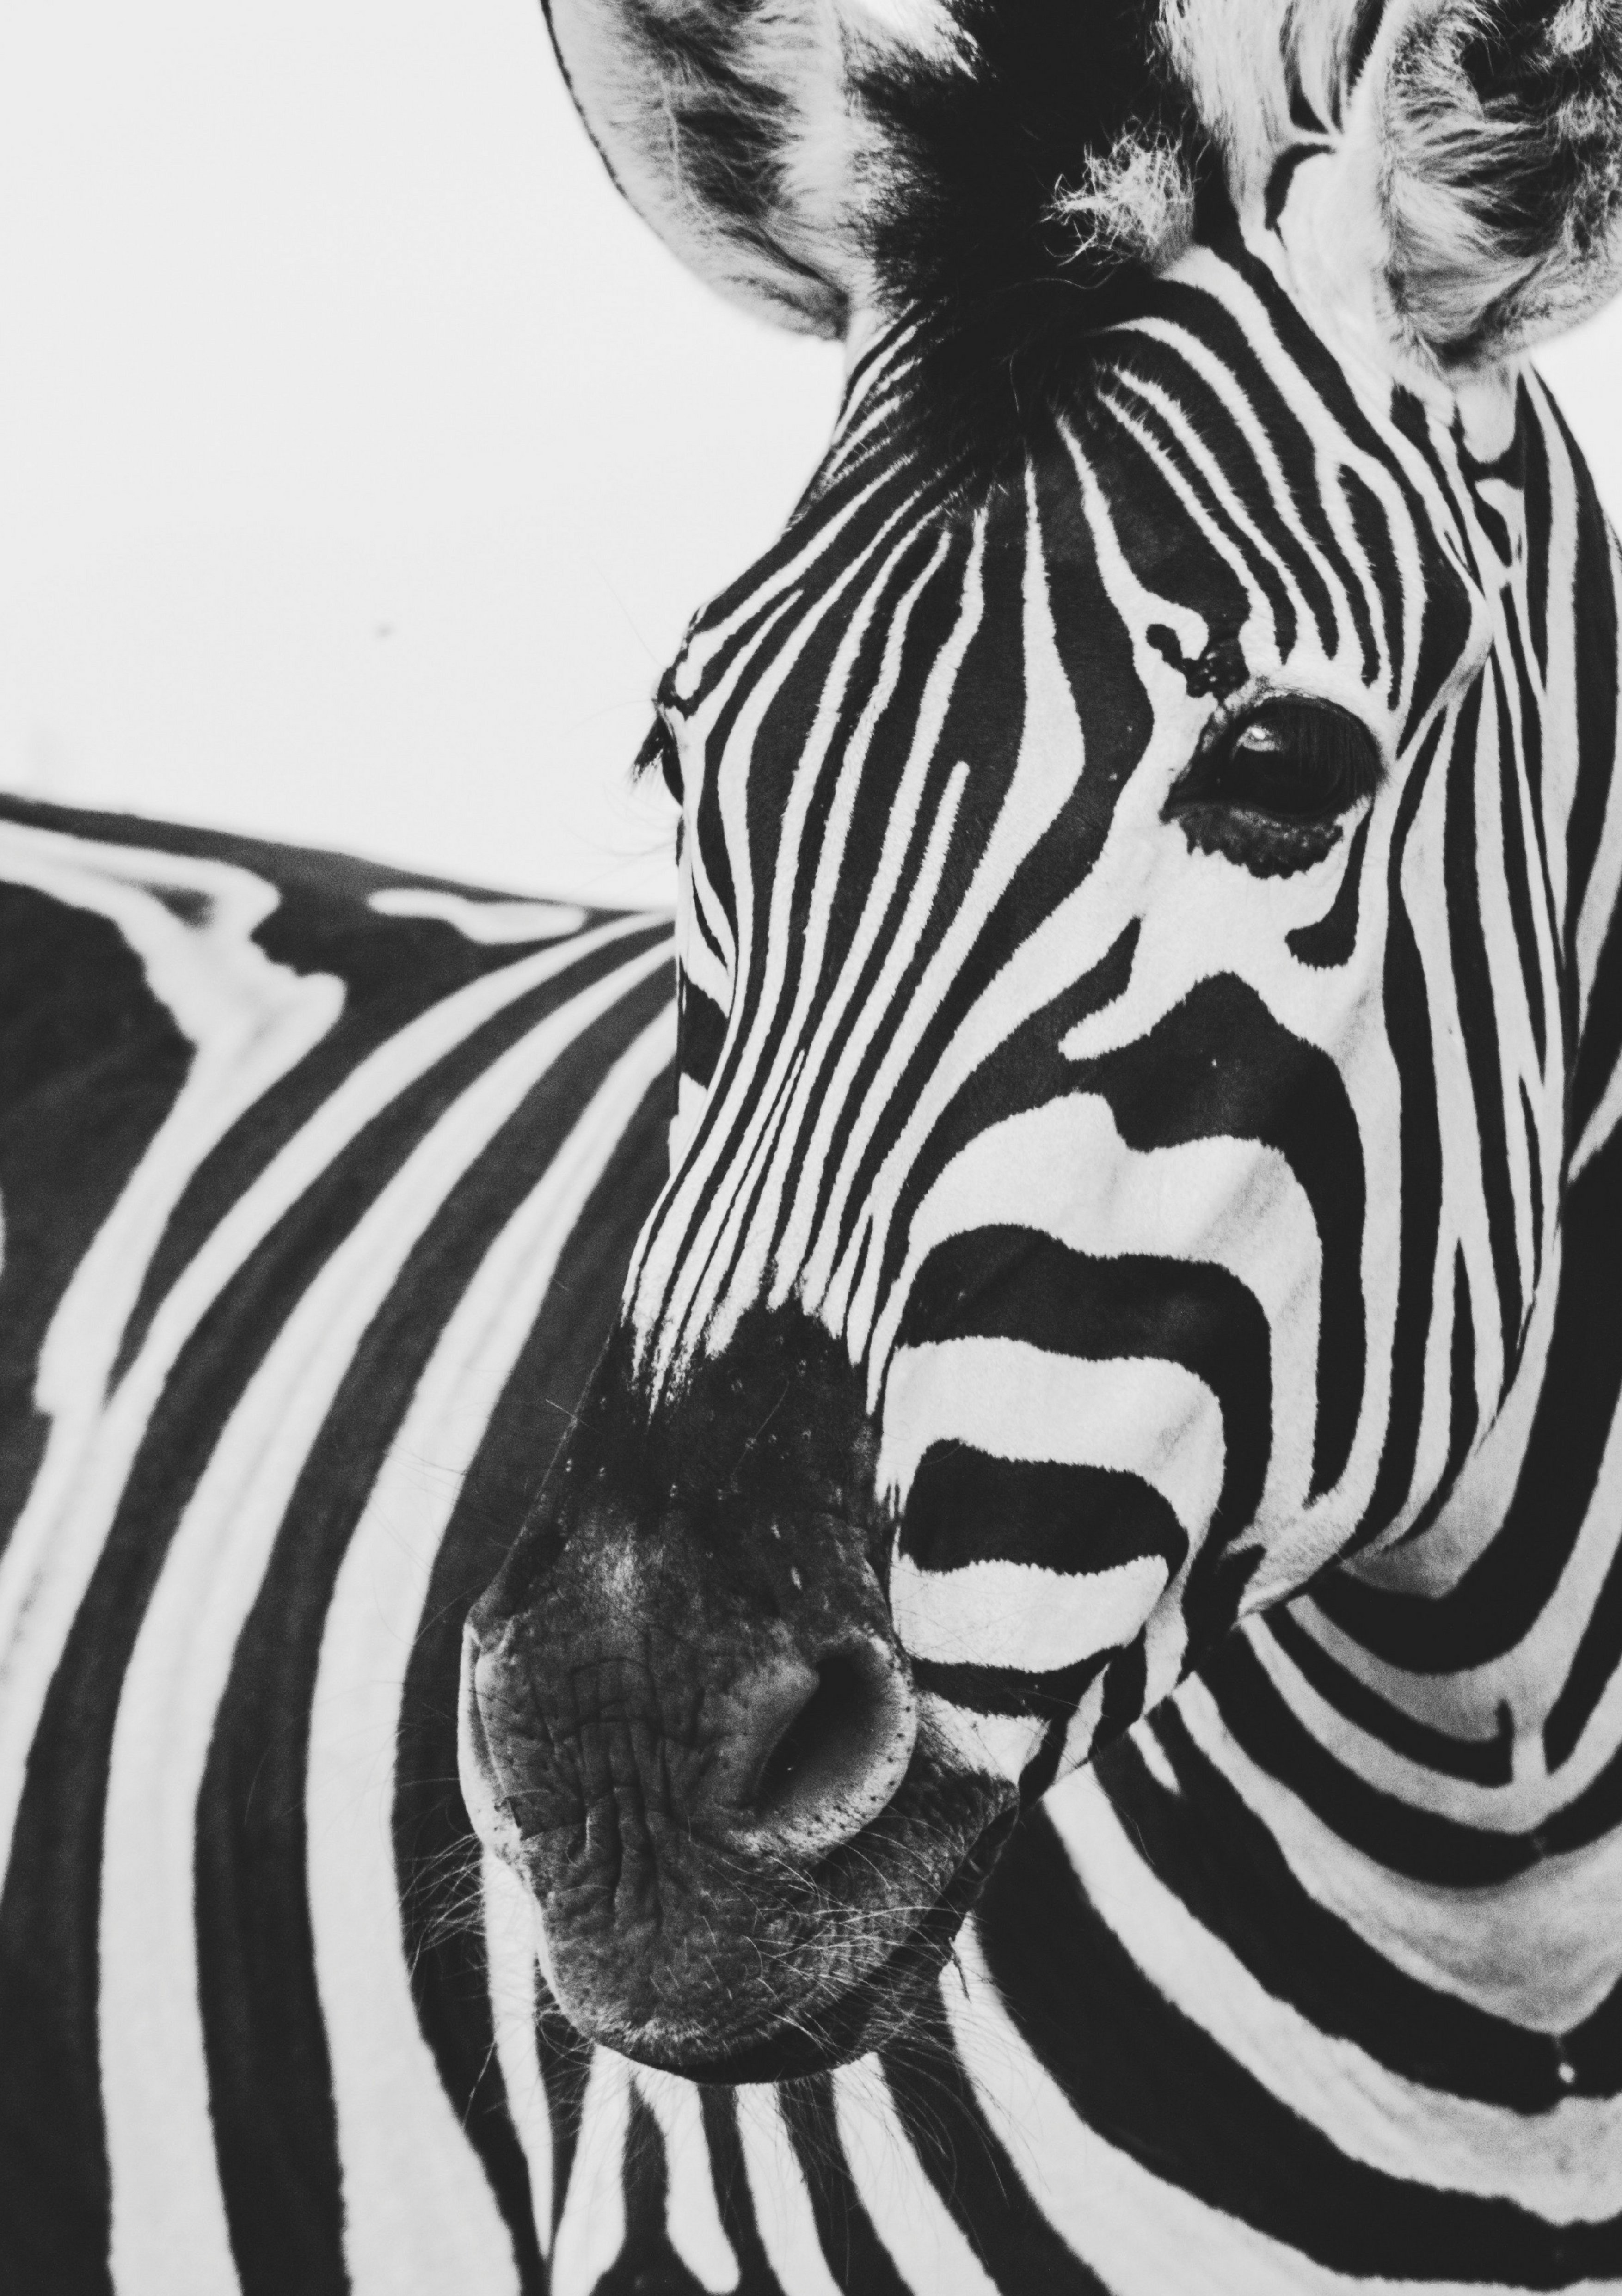 Zebra close-up photos found on the web.